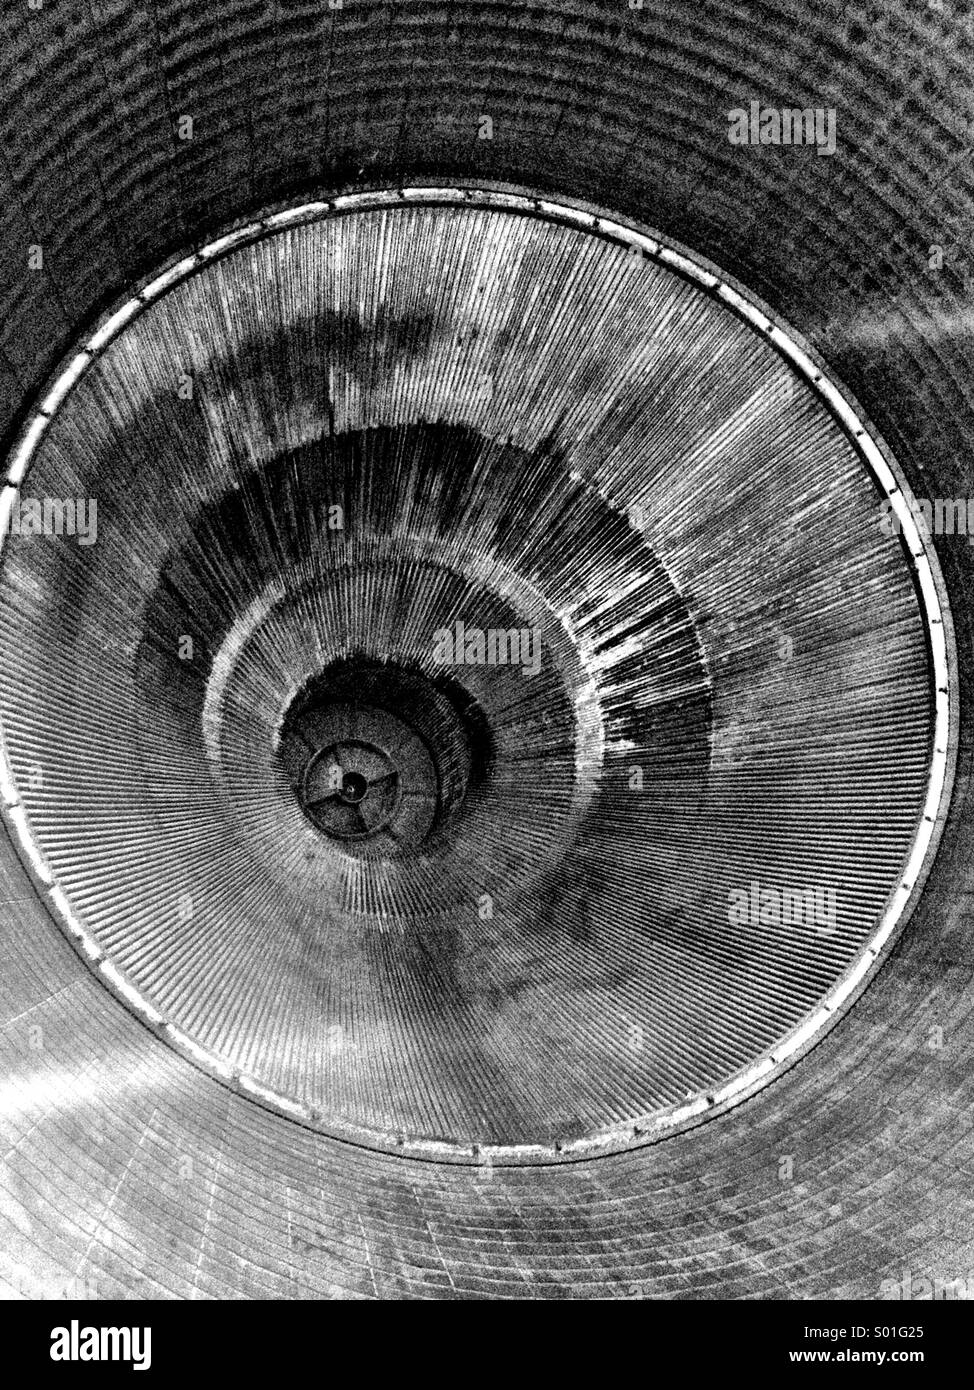 Das Innere der Düse eines Rocketdyne f-1-Motor wie auf einer Saturn V Mondrakete zu sehen. Stockfoto